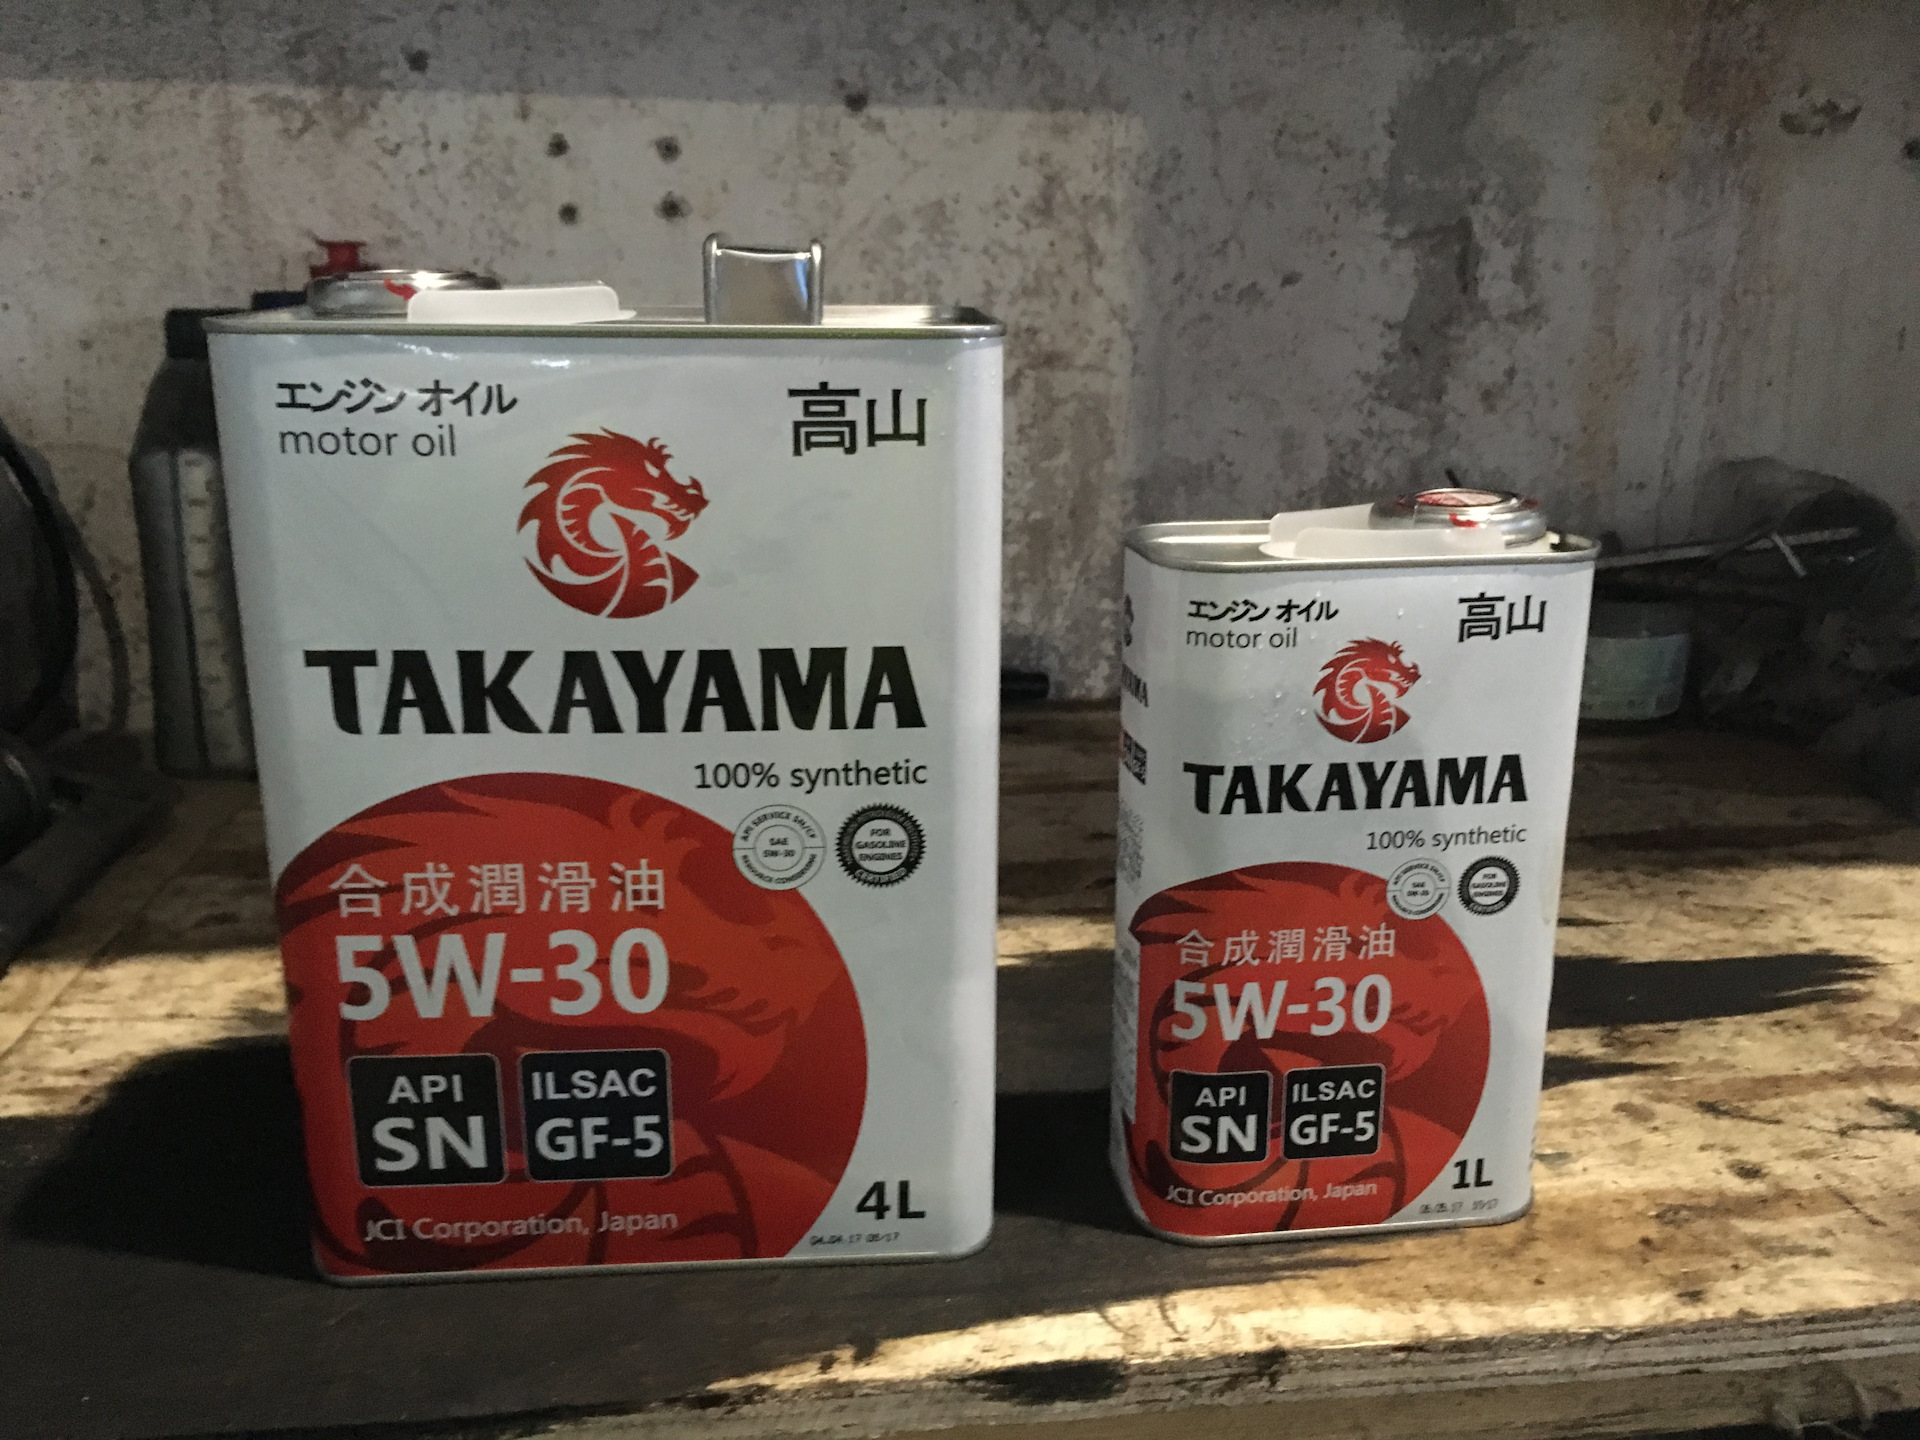 Моторное масло takayama 5w 40. Такаяма 5w30. Масло моторное Takayama 5w30. Японское моторное масло Takayama 5w30. Takayama 5w30 SN gf-5.